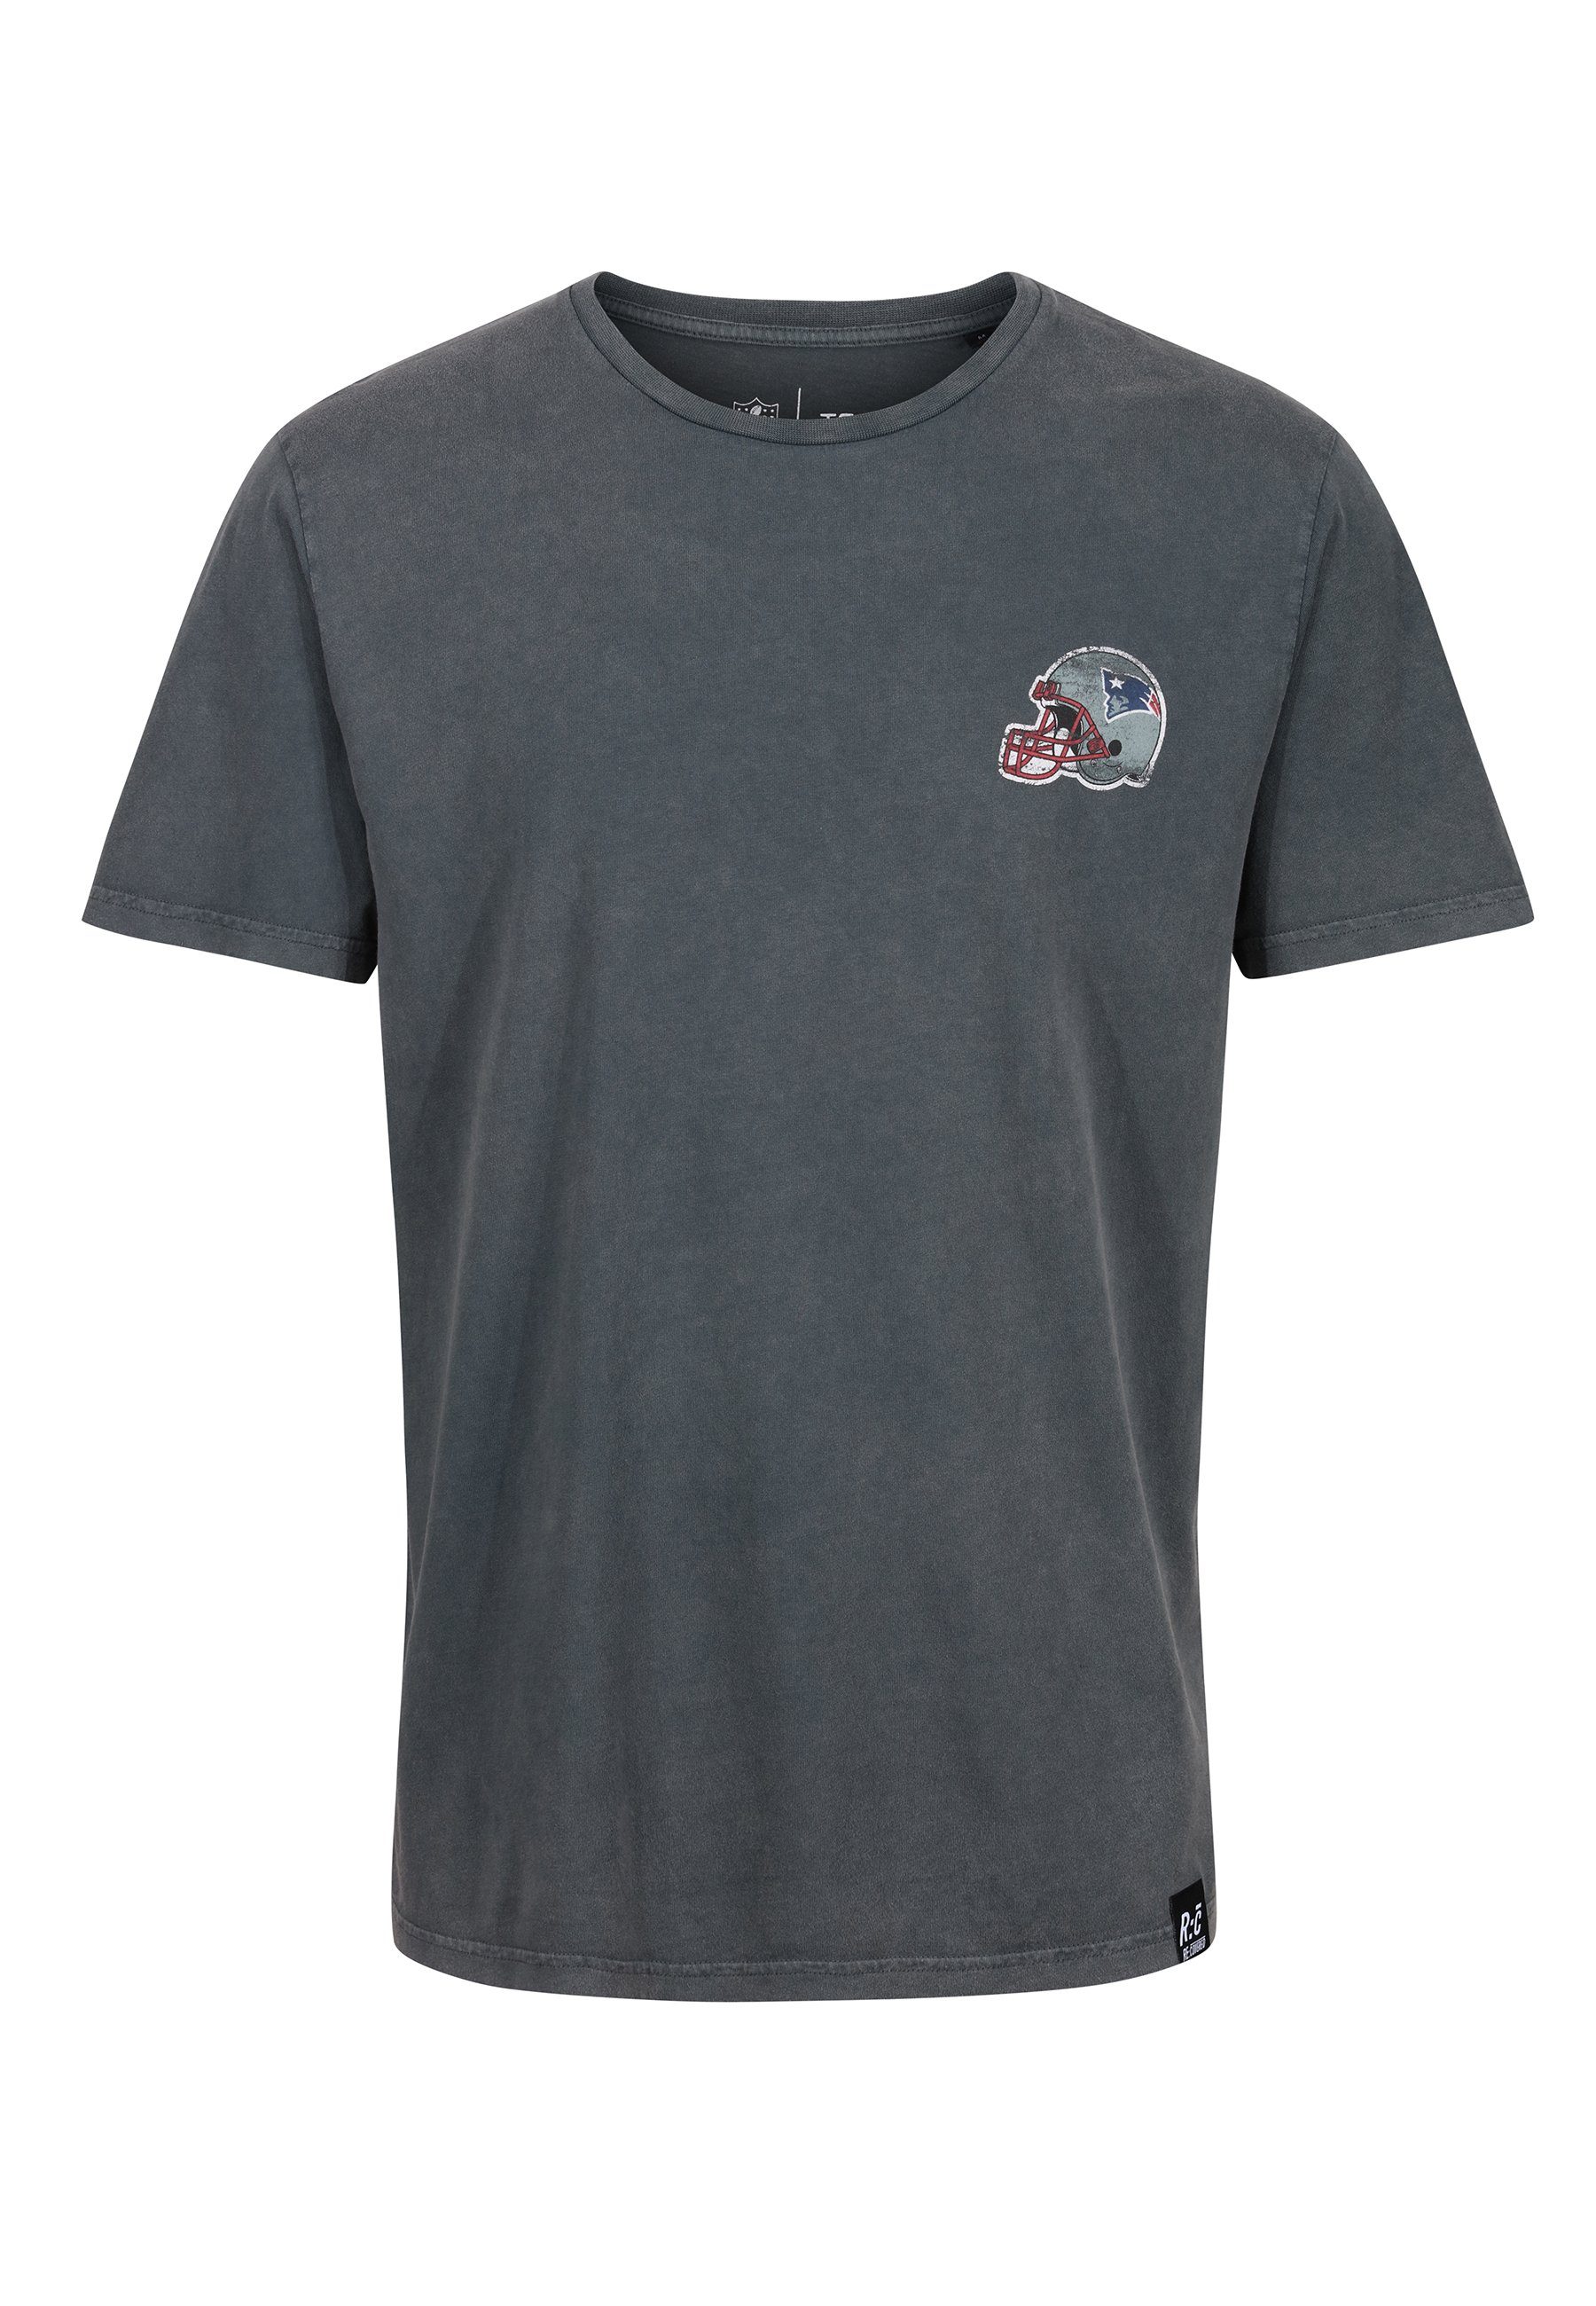 COLLEGE Recovered PATRIOTS GOTS zertifizierte NFL Bio-Baumwolle T-Shirt